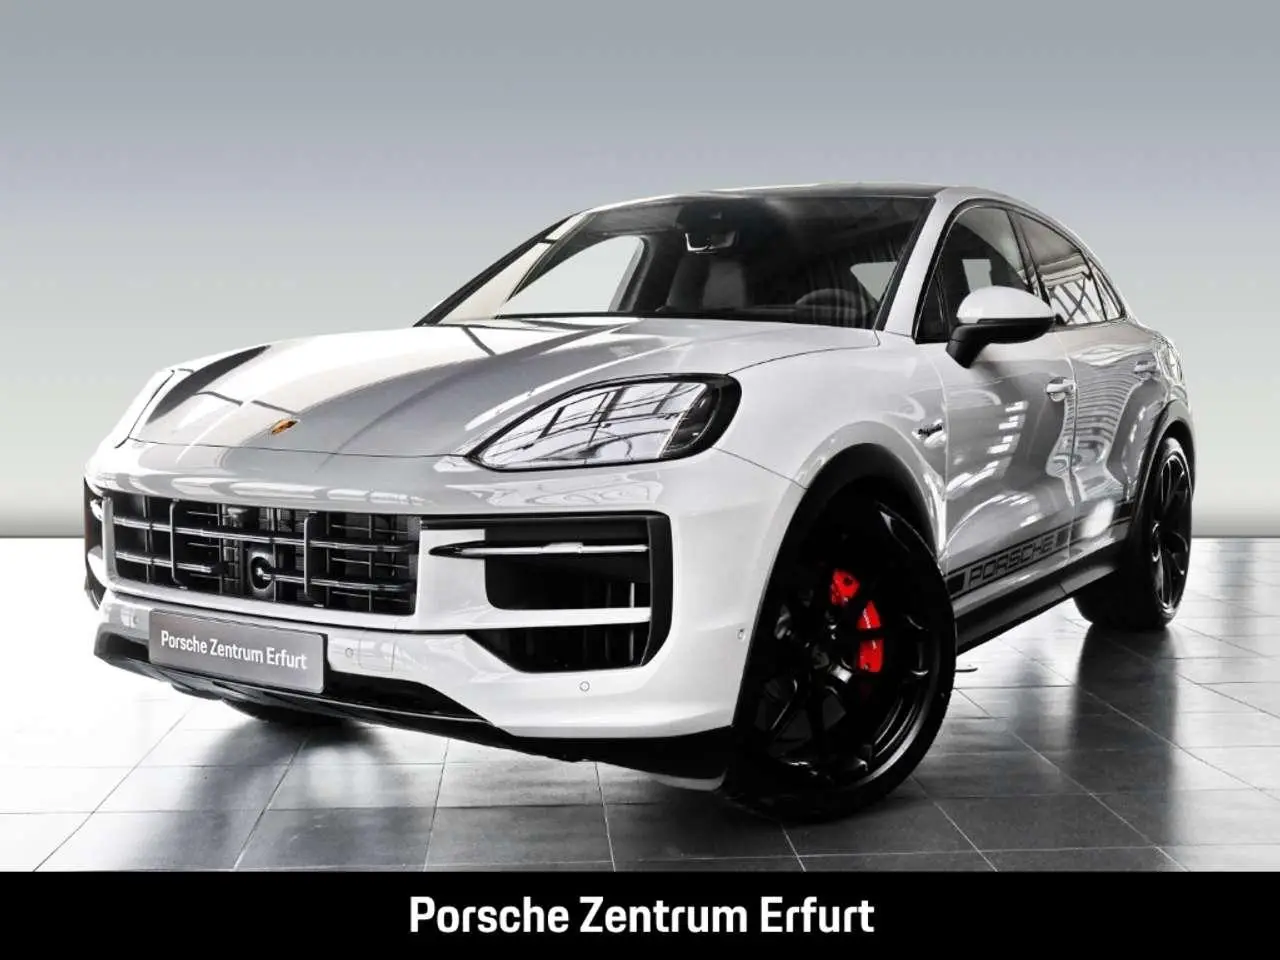 Photo 1 : Porsche Cayenne 2024 Hybrid